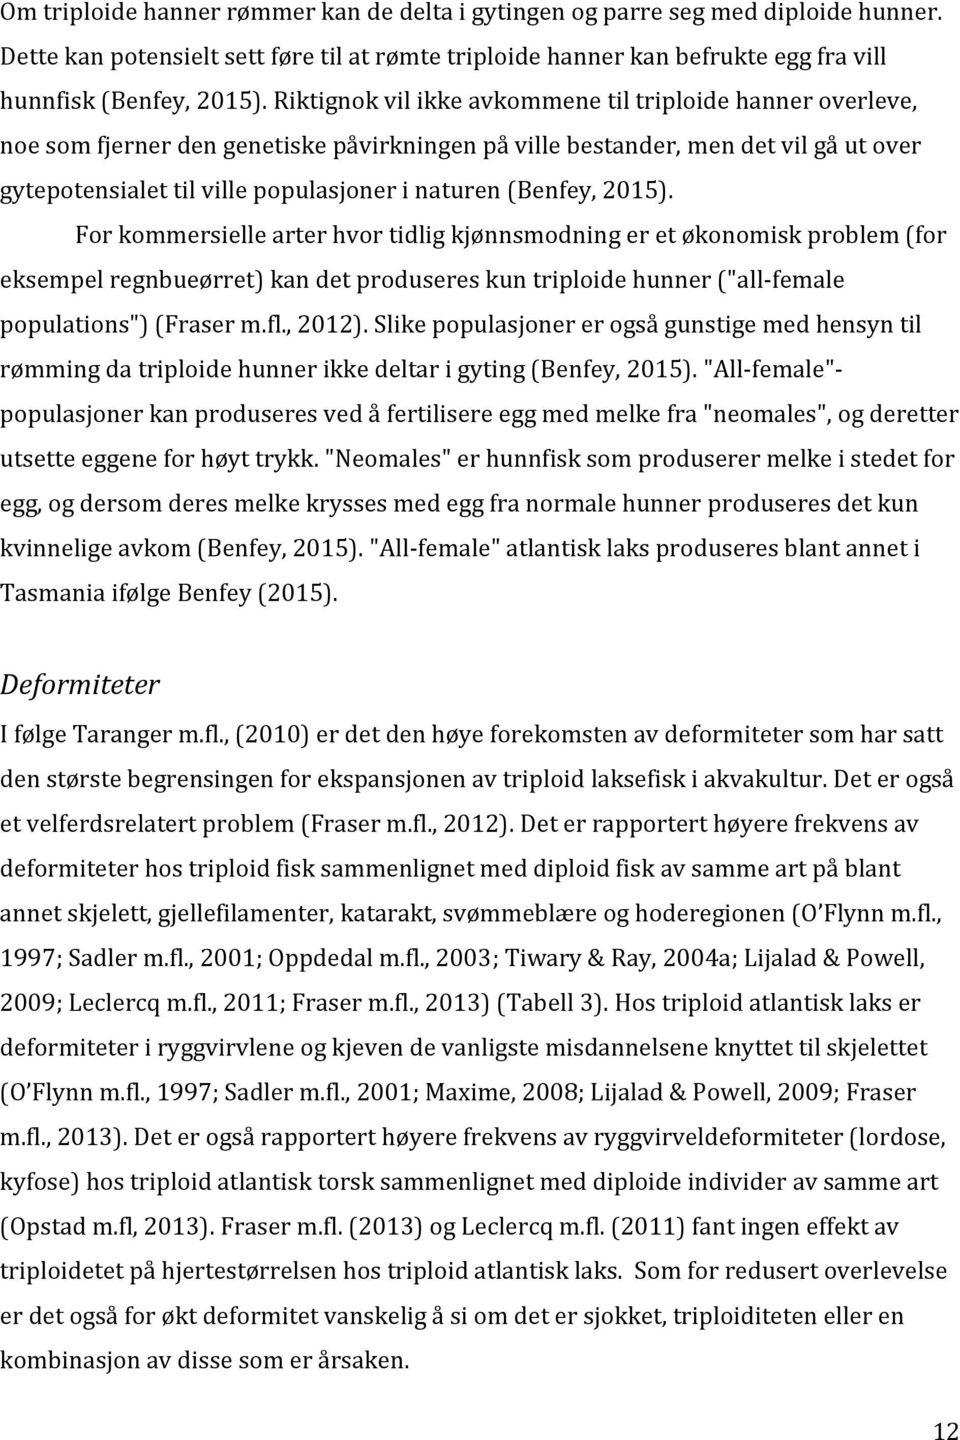 (Benfey, 2015). For kommersielle arter hvor tidlig kjønnsmodning er et økonomisk problem (for eksempel regnbueørret) kan det produseres kun triploide hunner ("all-female populations") (Fraser m.fl.